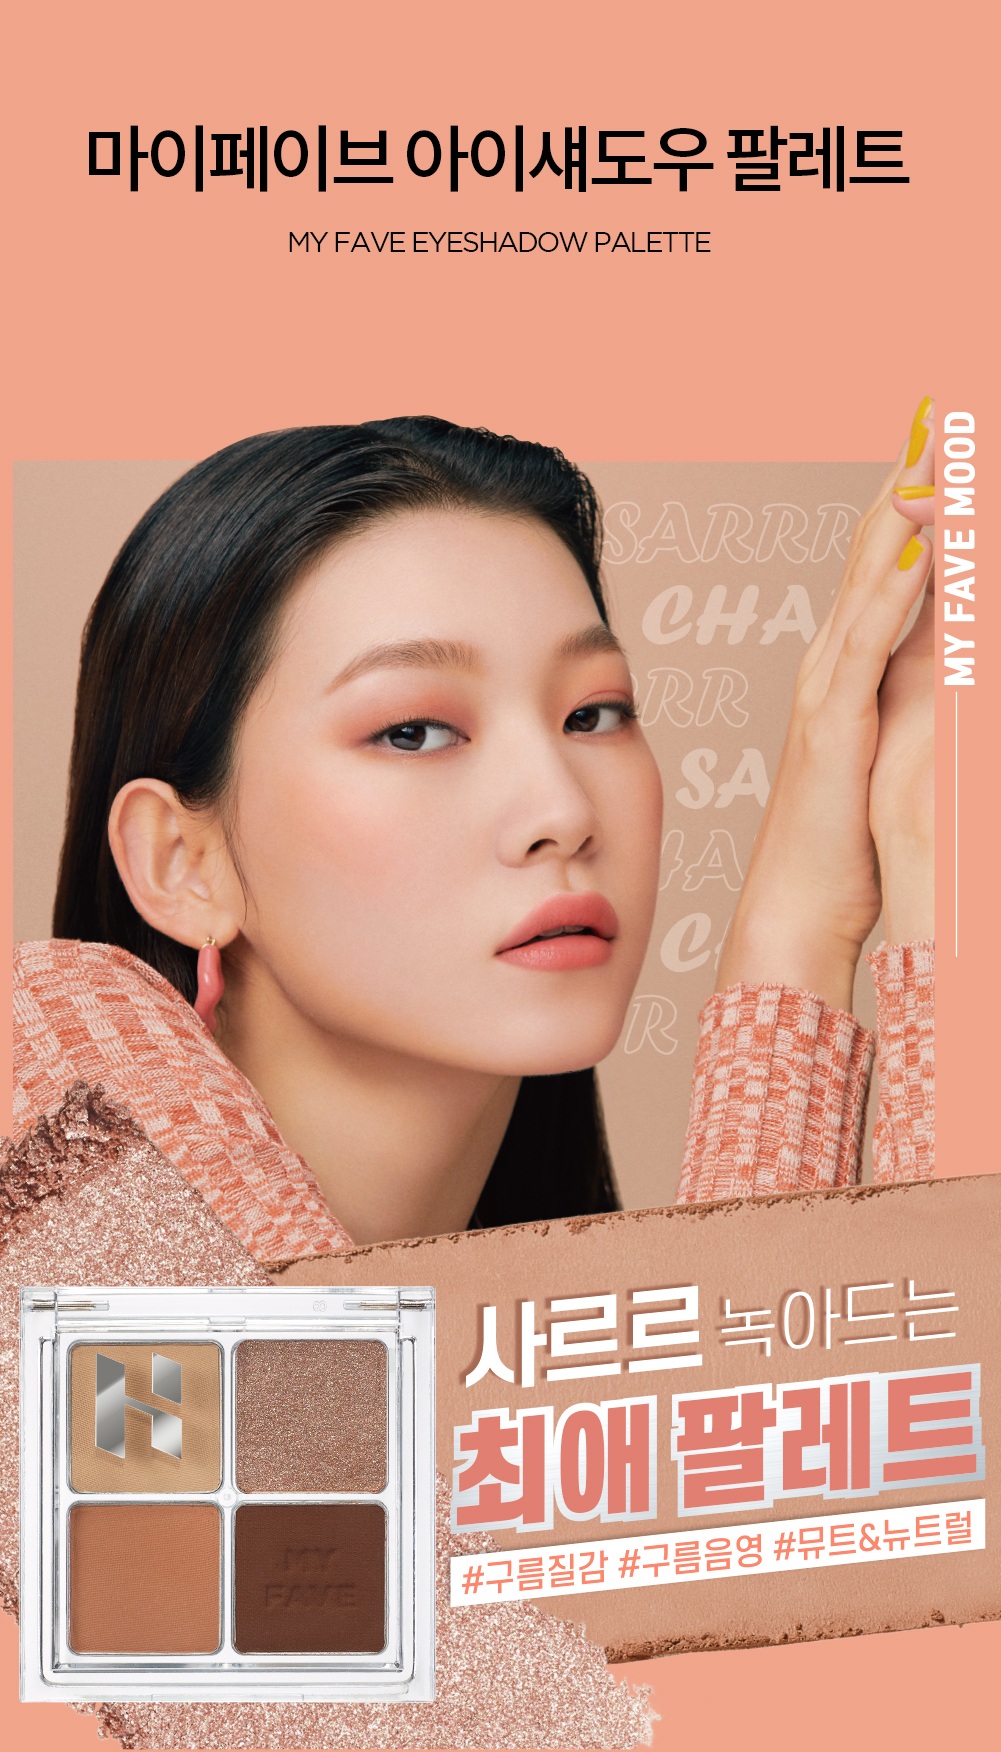 Holika Holika My Fave Eye Shadow Palette korean makeup product online shop malaysia China indonesia1a